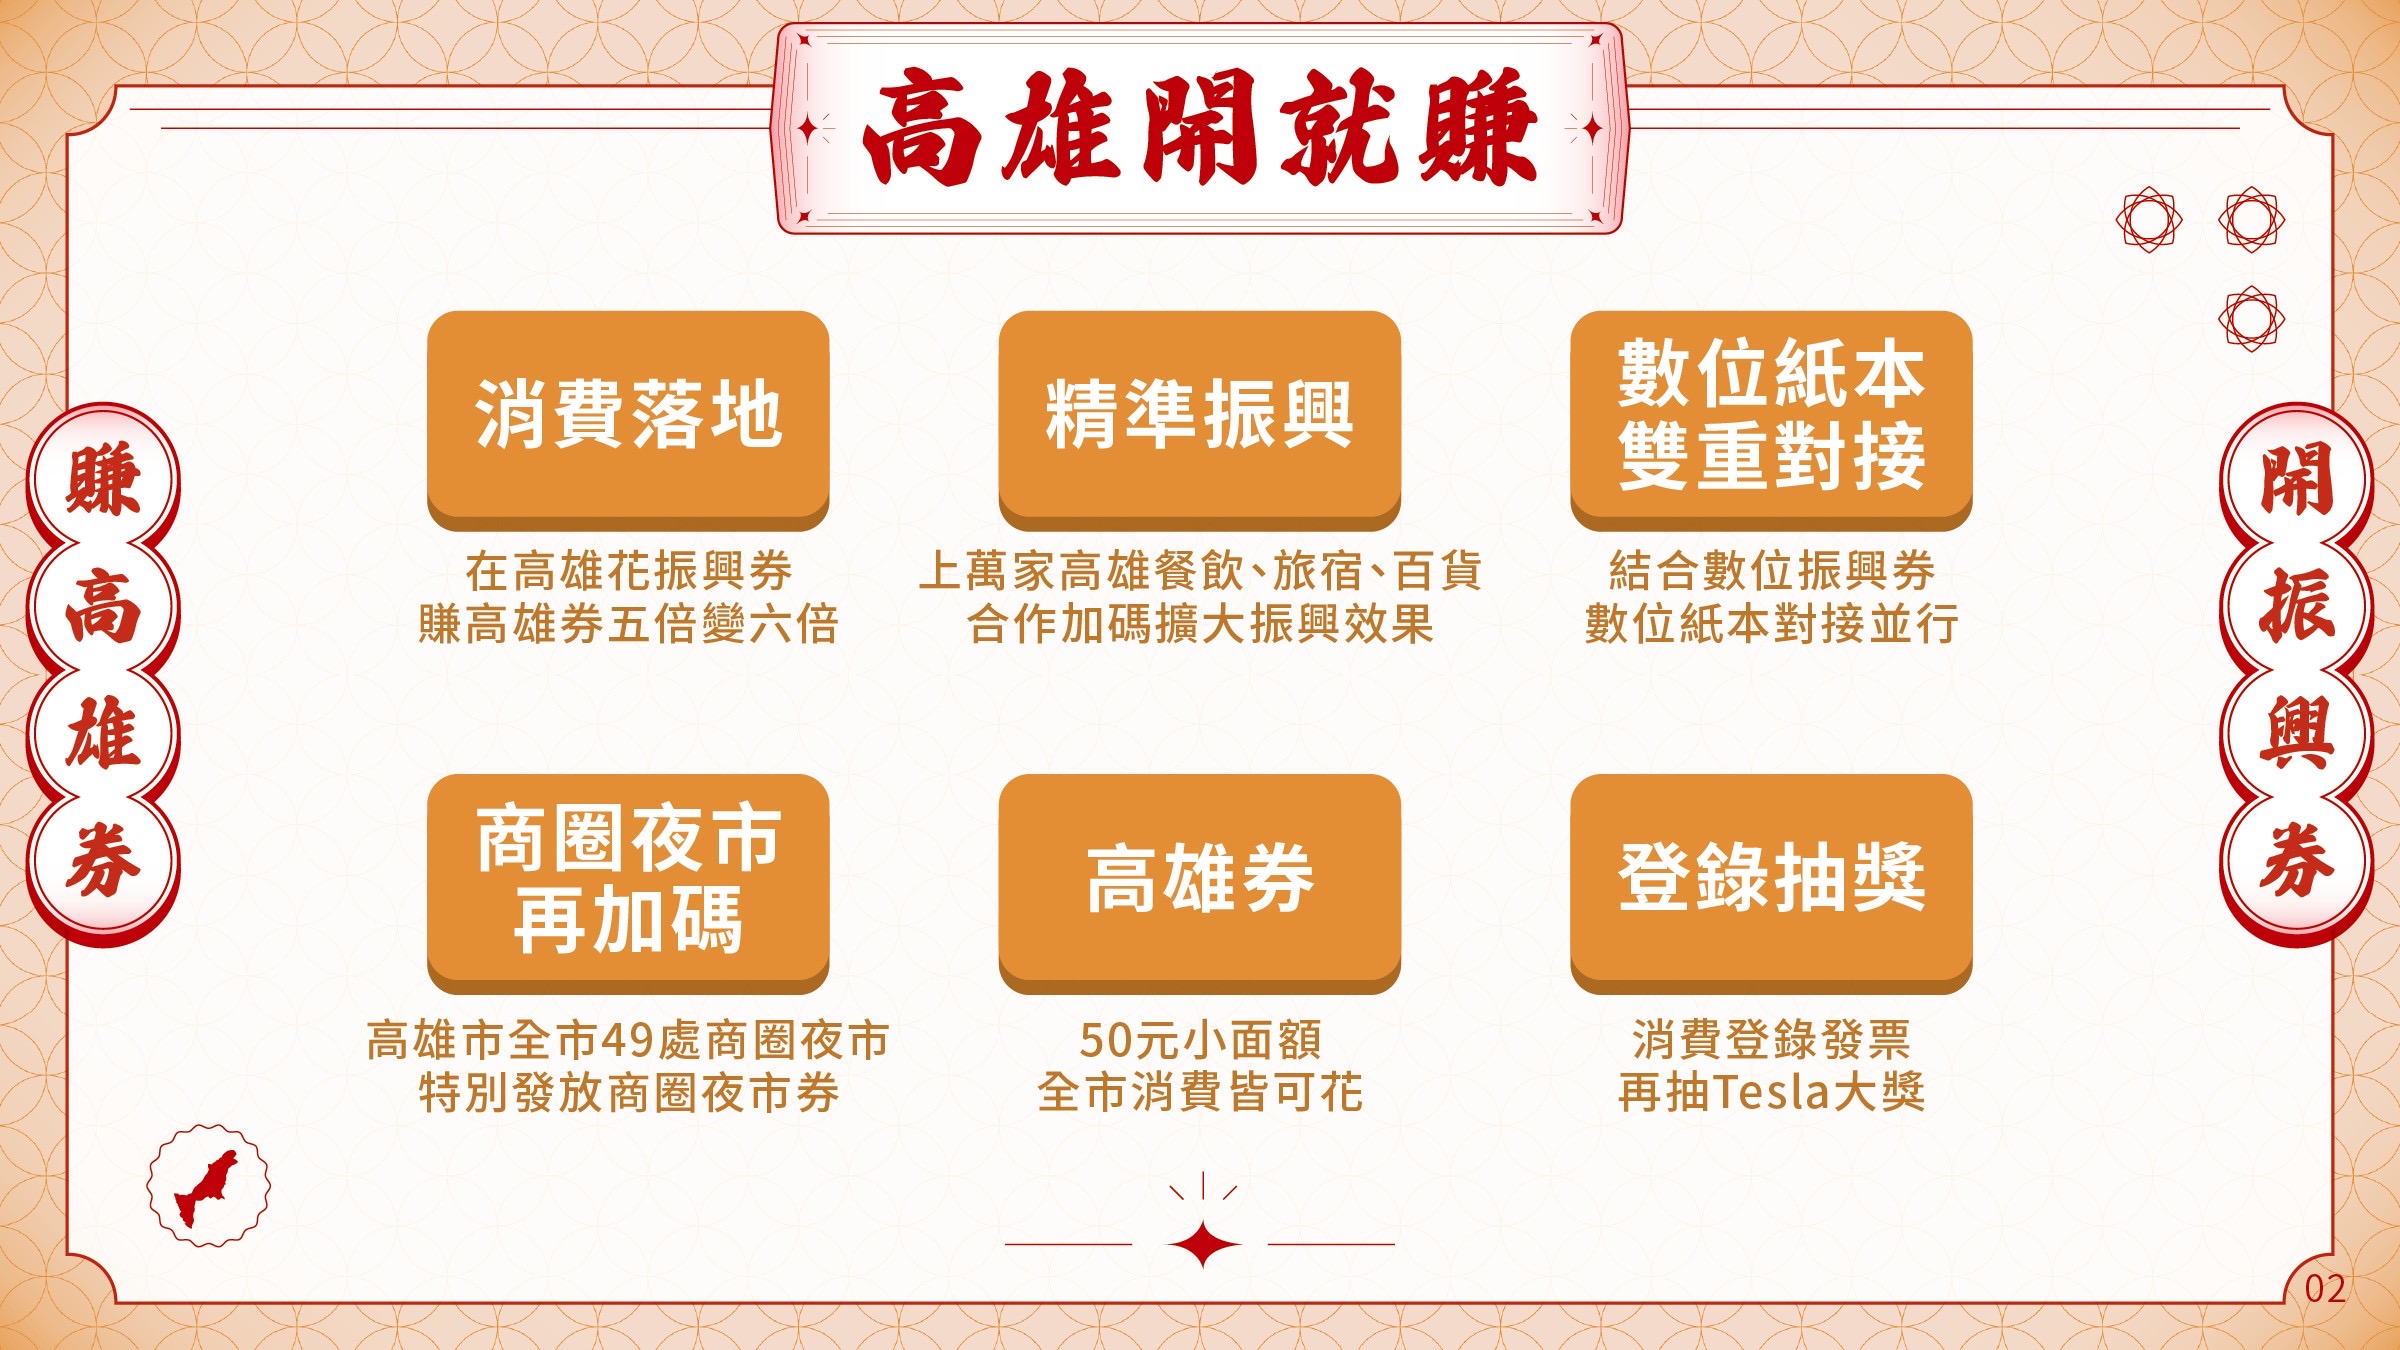 市長陳其邁宣布將推出「高雄開就賺」振興活動